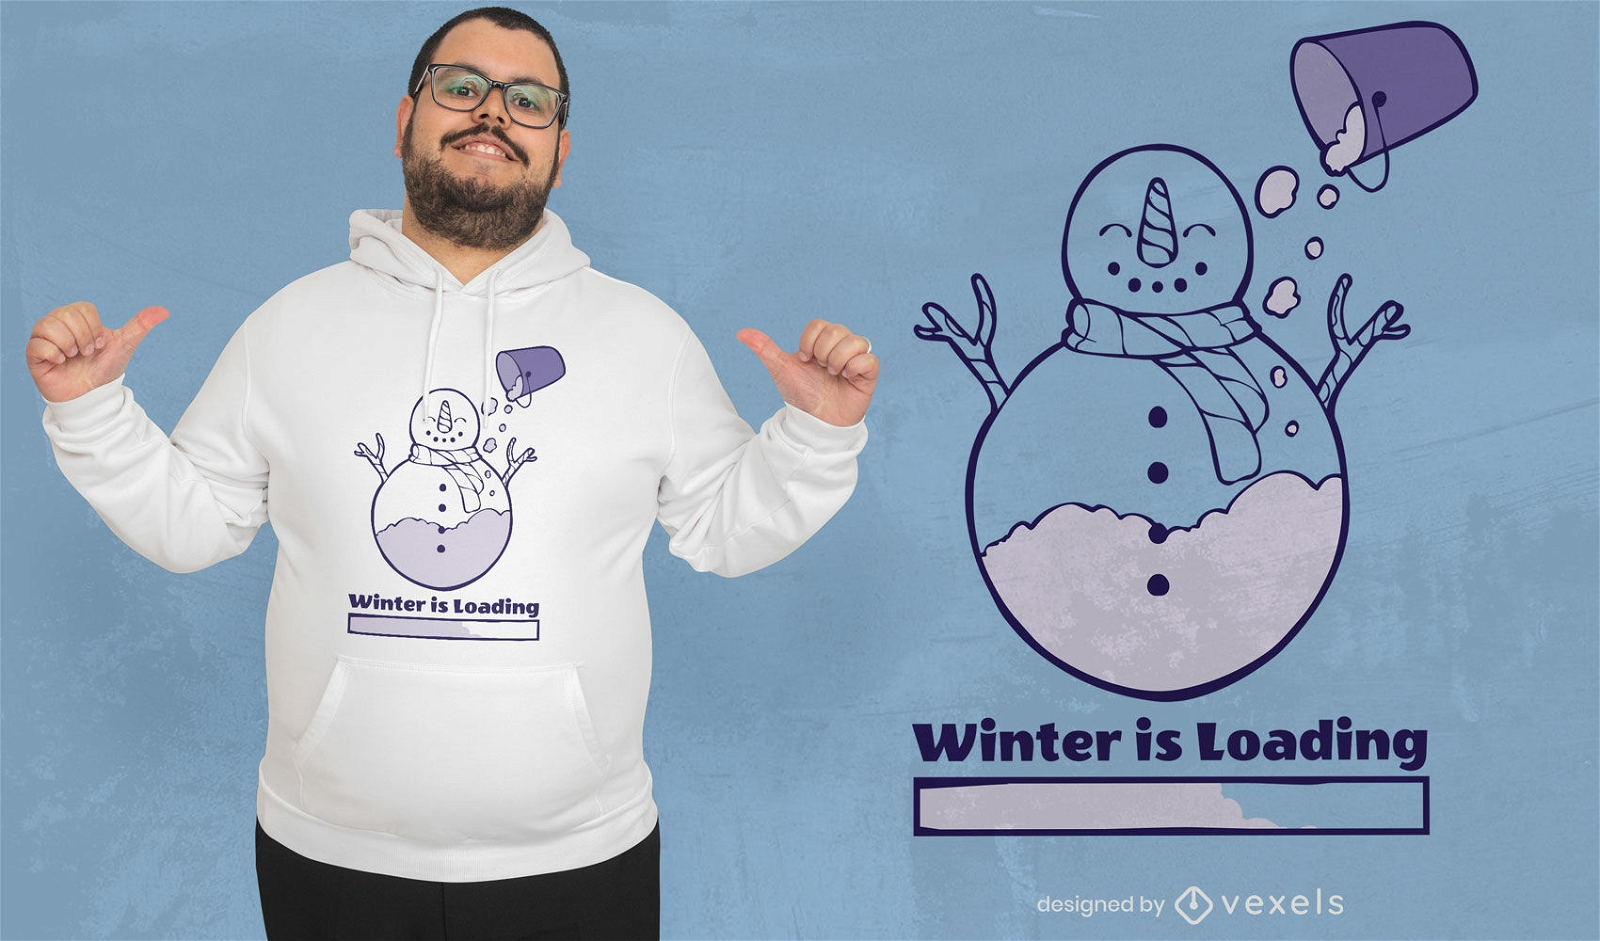 Der Winter l?dt das Schneemann-T-Shirt-Design